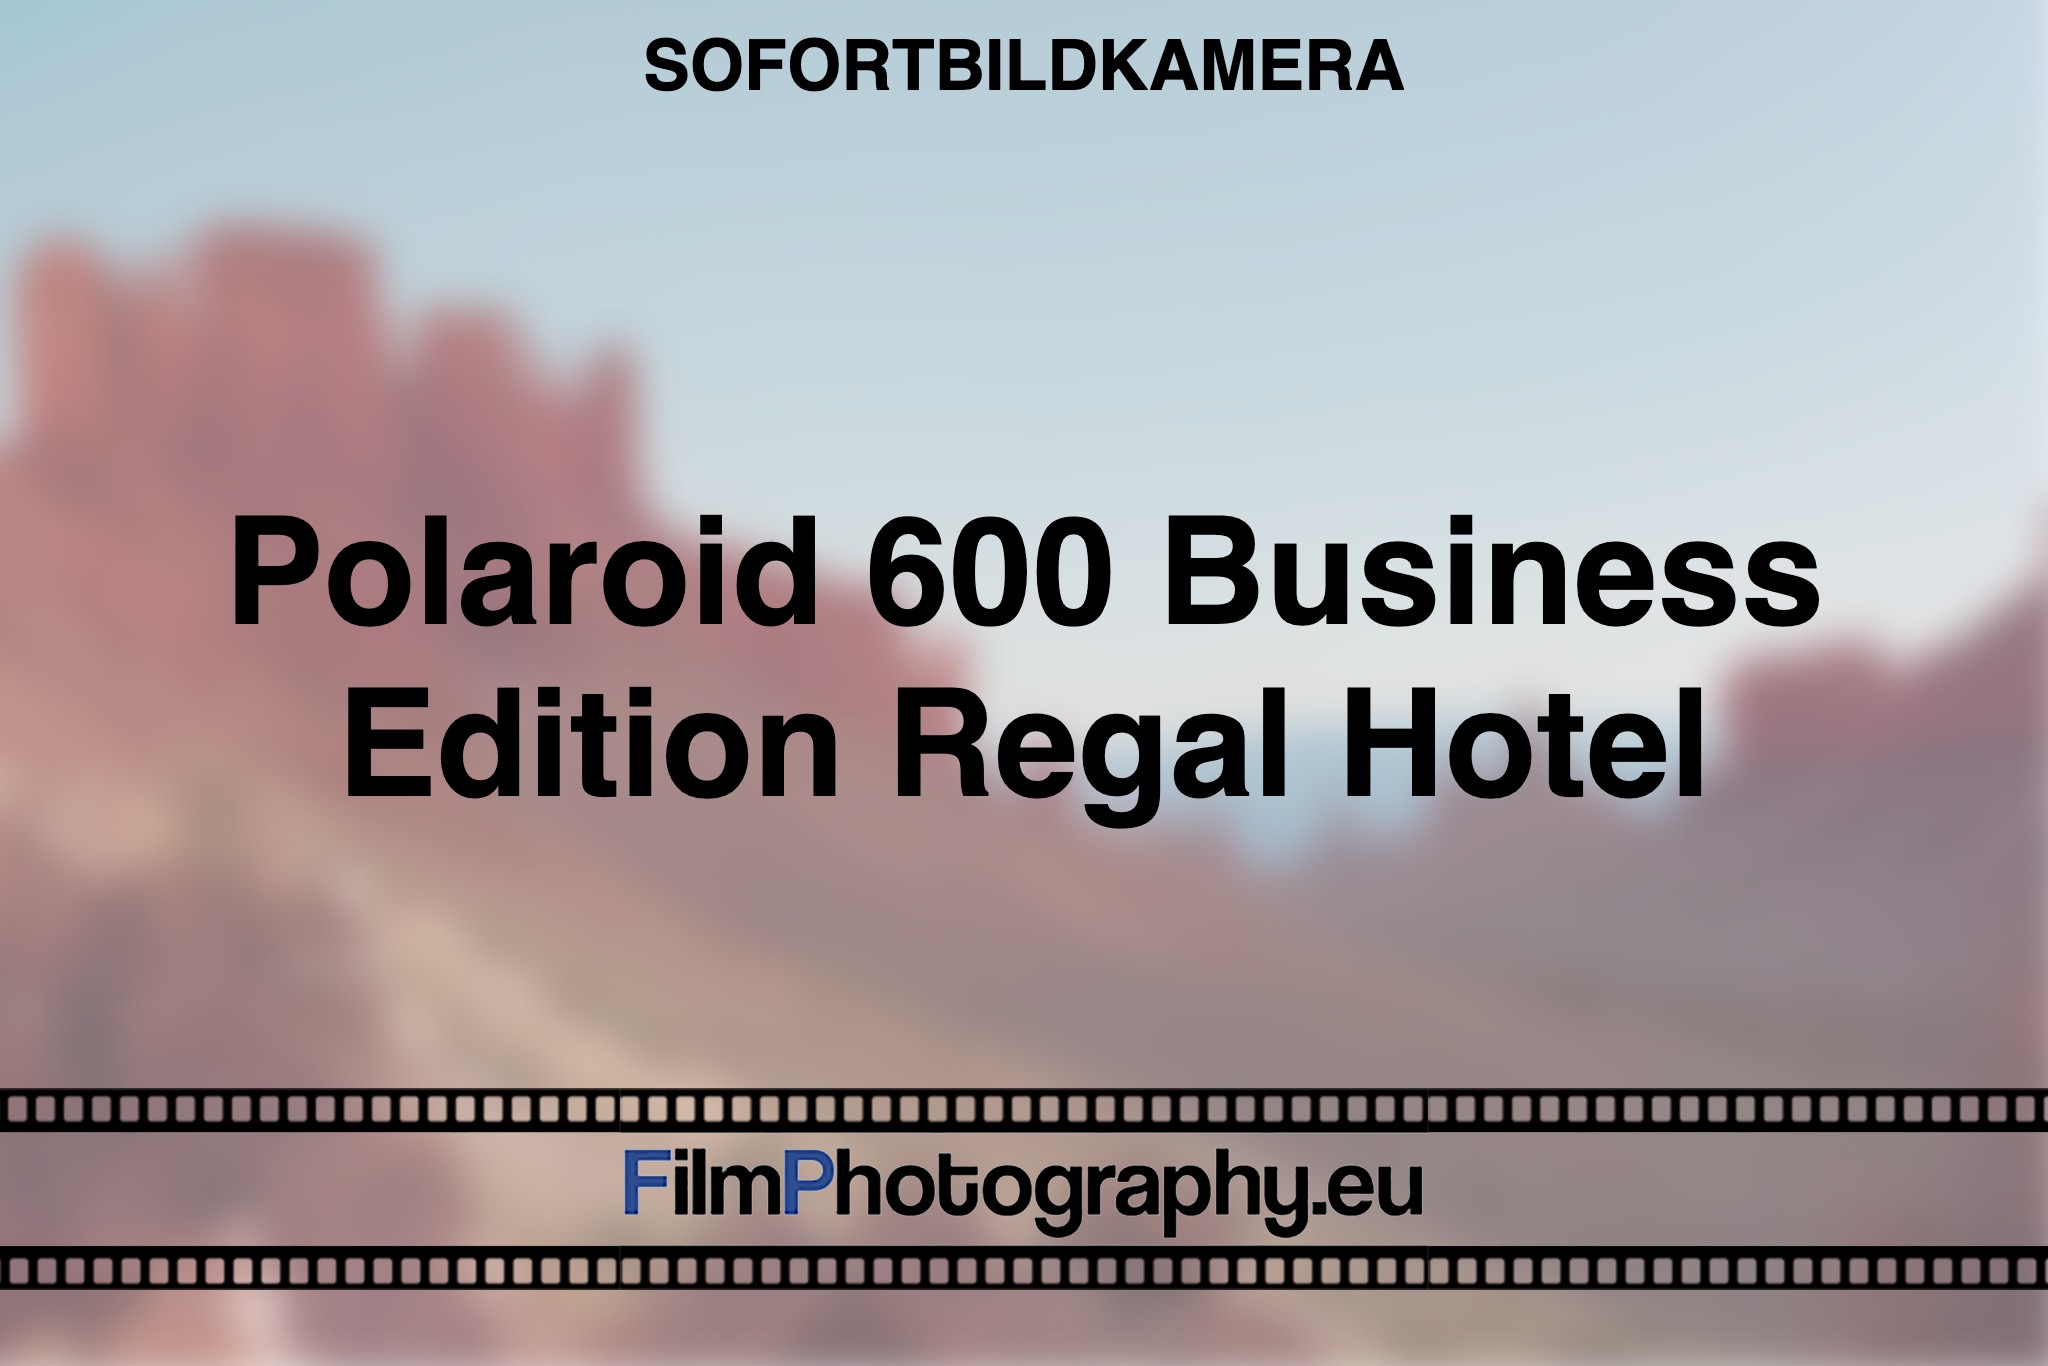 polaroid-600-business-edition-regal-hotel-sofortbildkamera-bnv